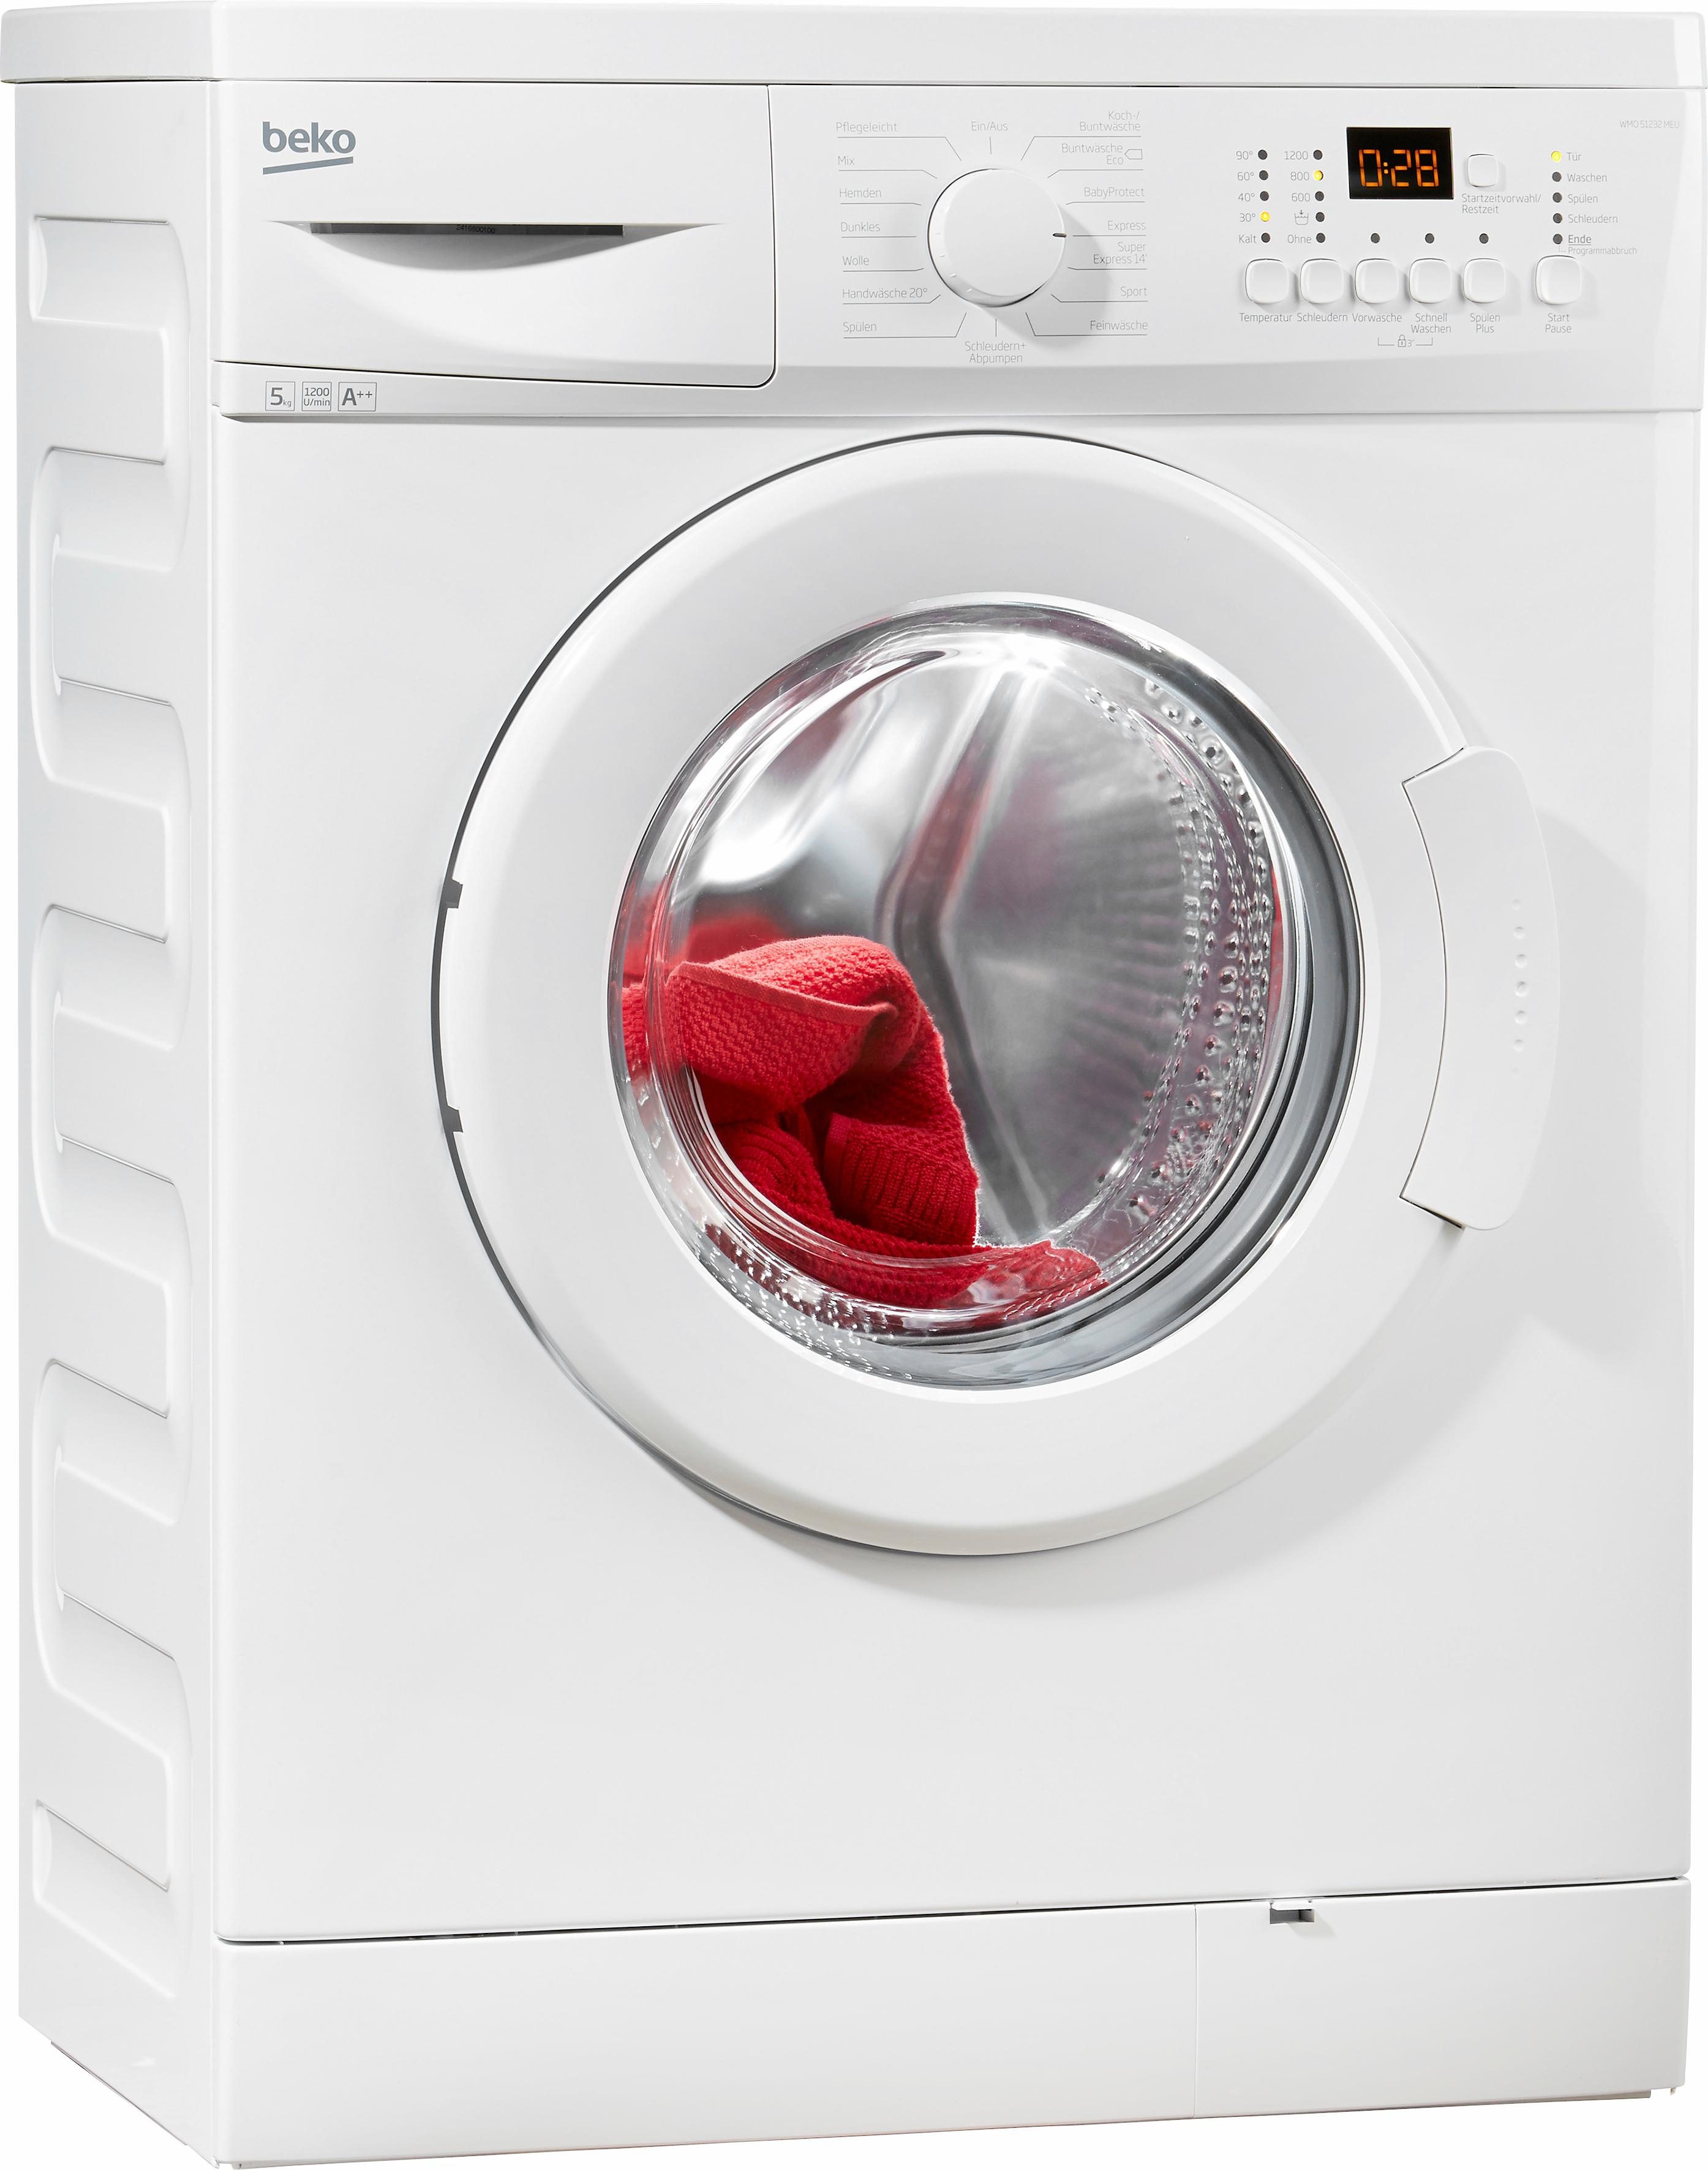 Beko WML 61423 N Waschmaschine Frontlader 6 kg 1400 RPM Weiß Testberichte |  Waschmaschinen im Test - alaTest.de